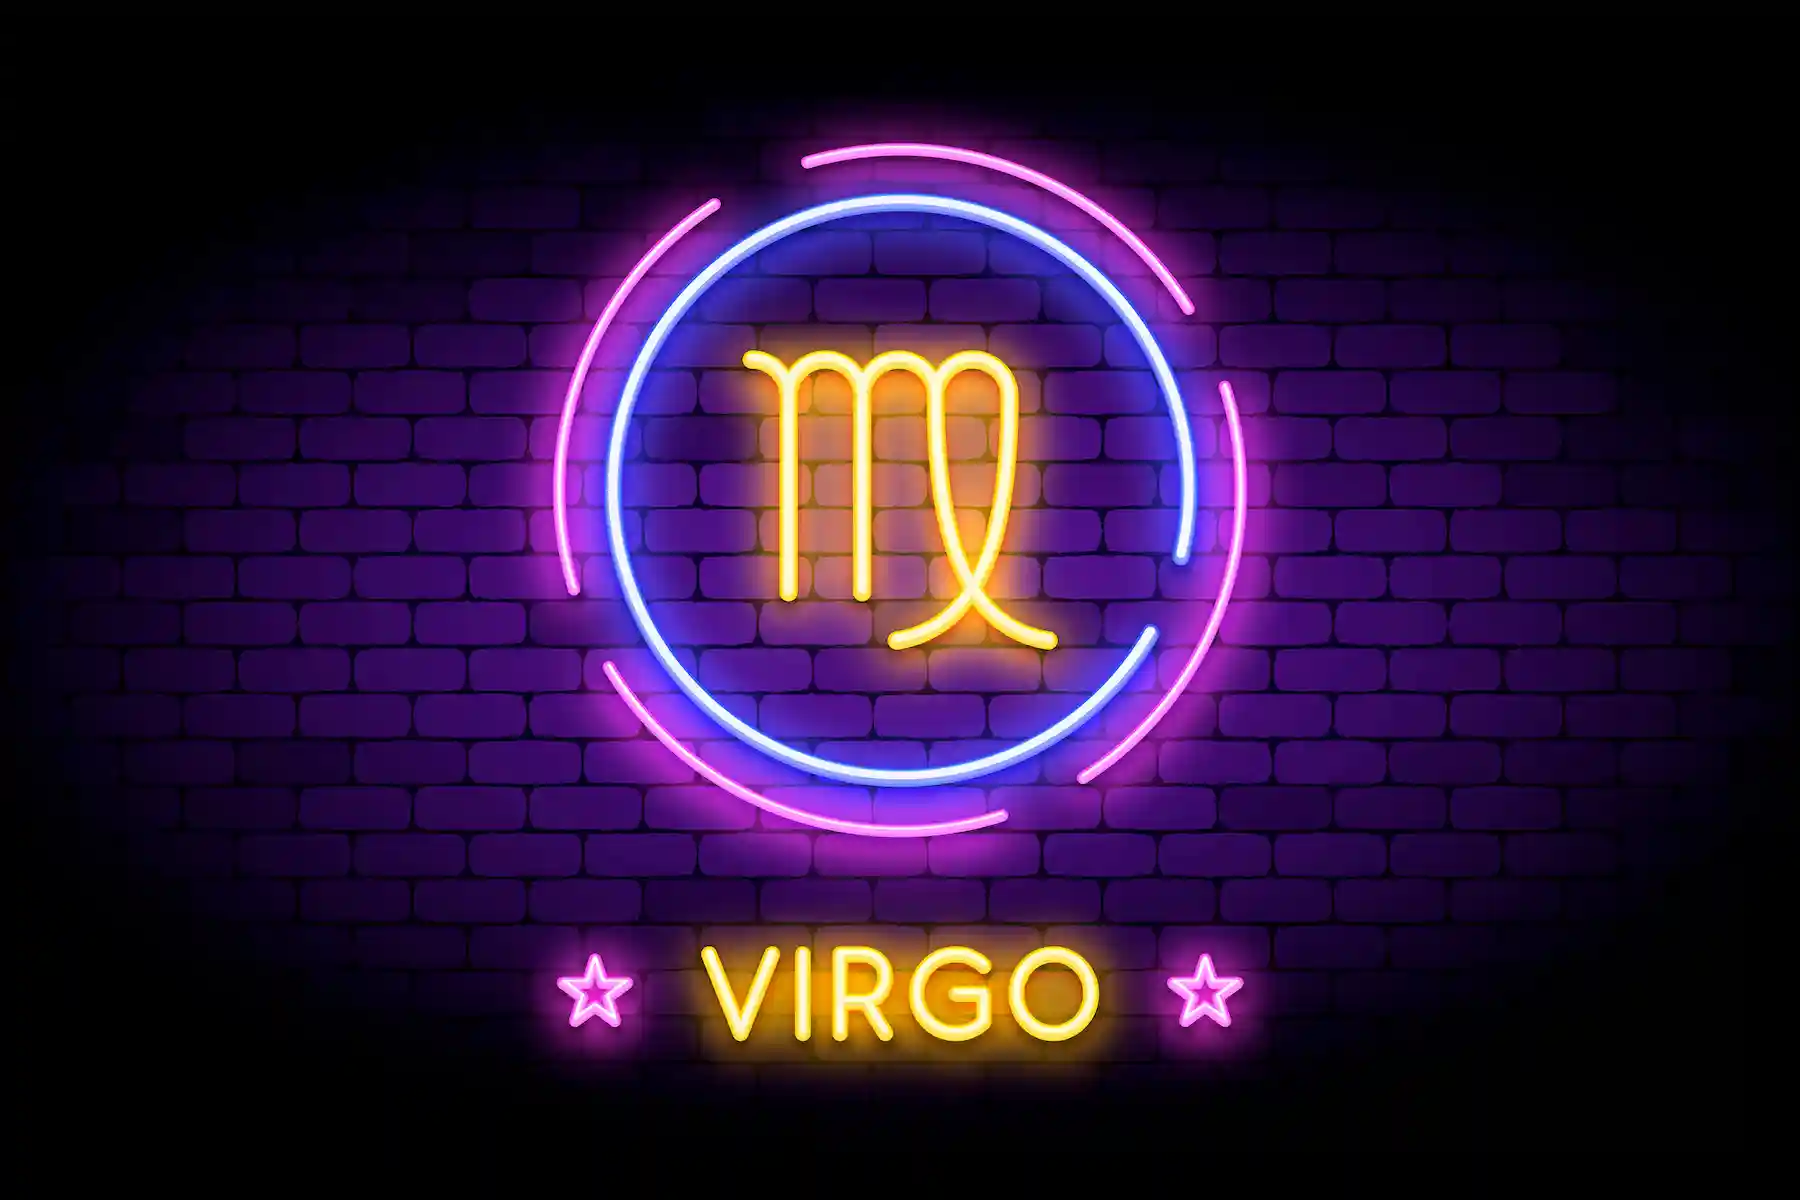 virgo sign neon